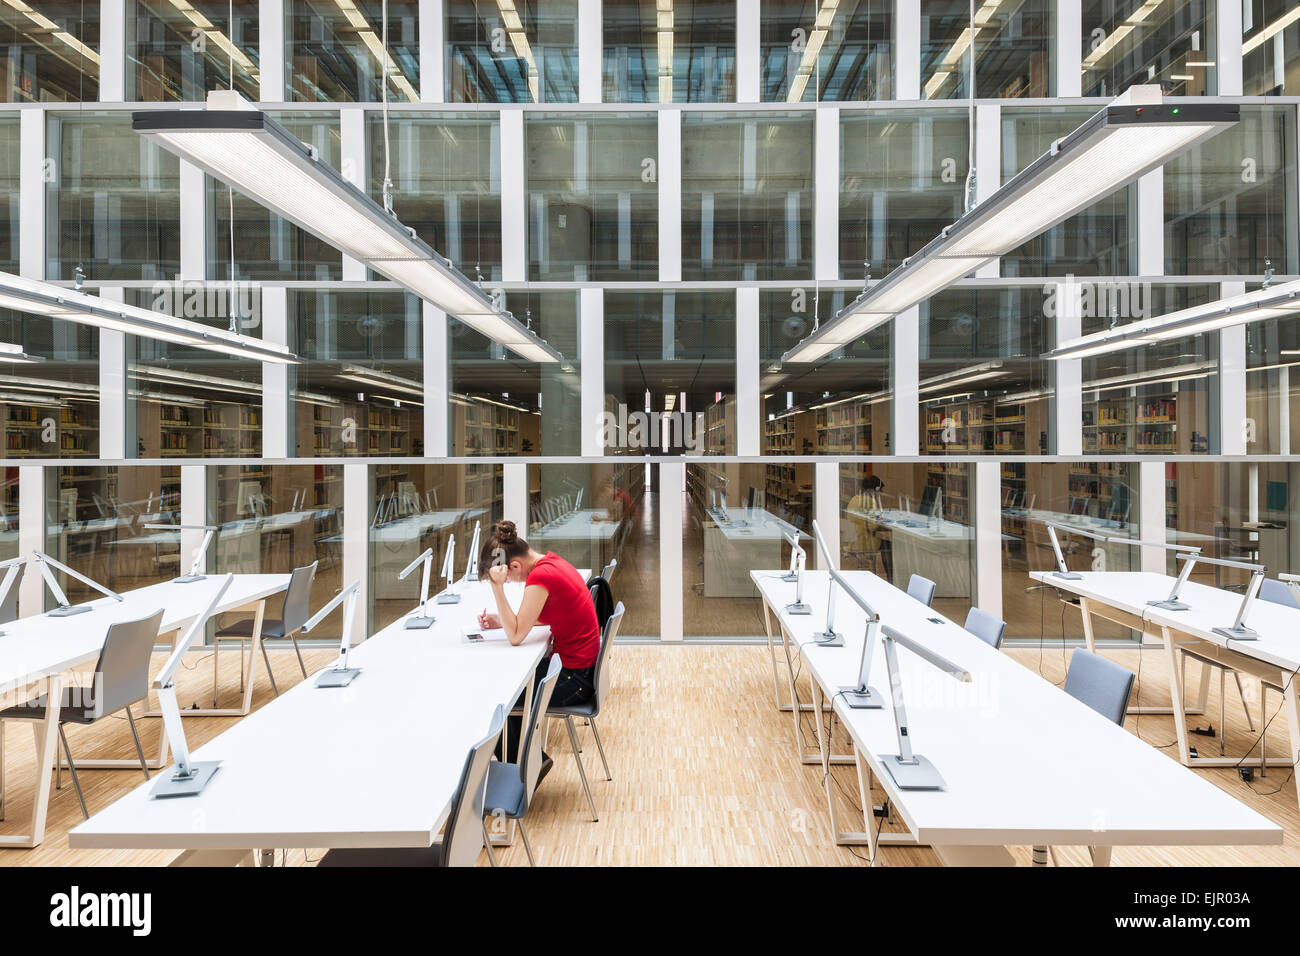 Le informazioni scientifiche Center & Academic Library, Katowice, Polonia. Architetto: HS99 , 2012. Foto Stock